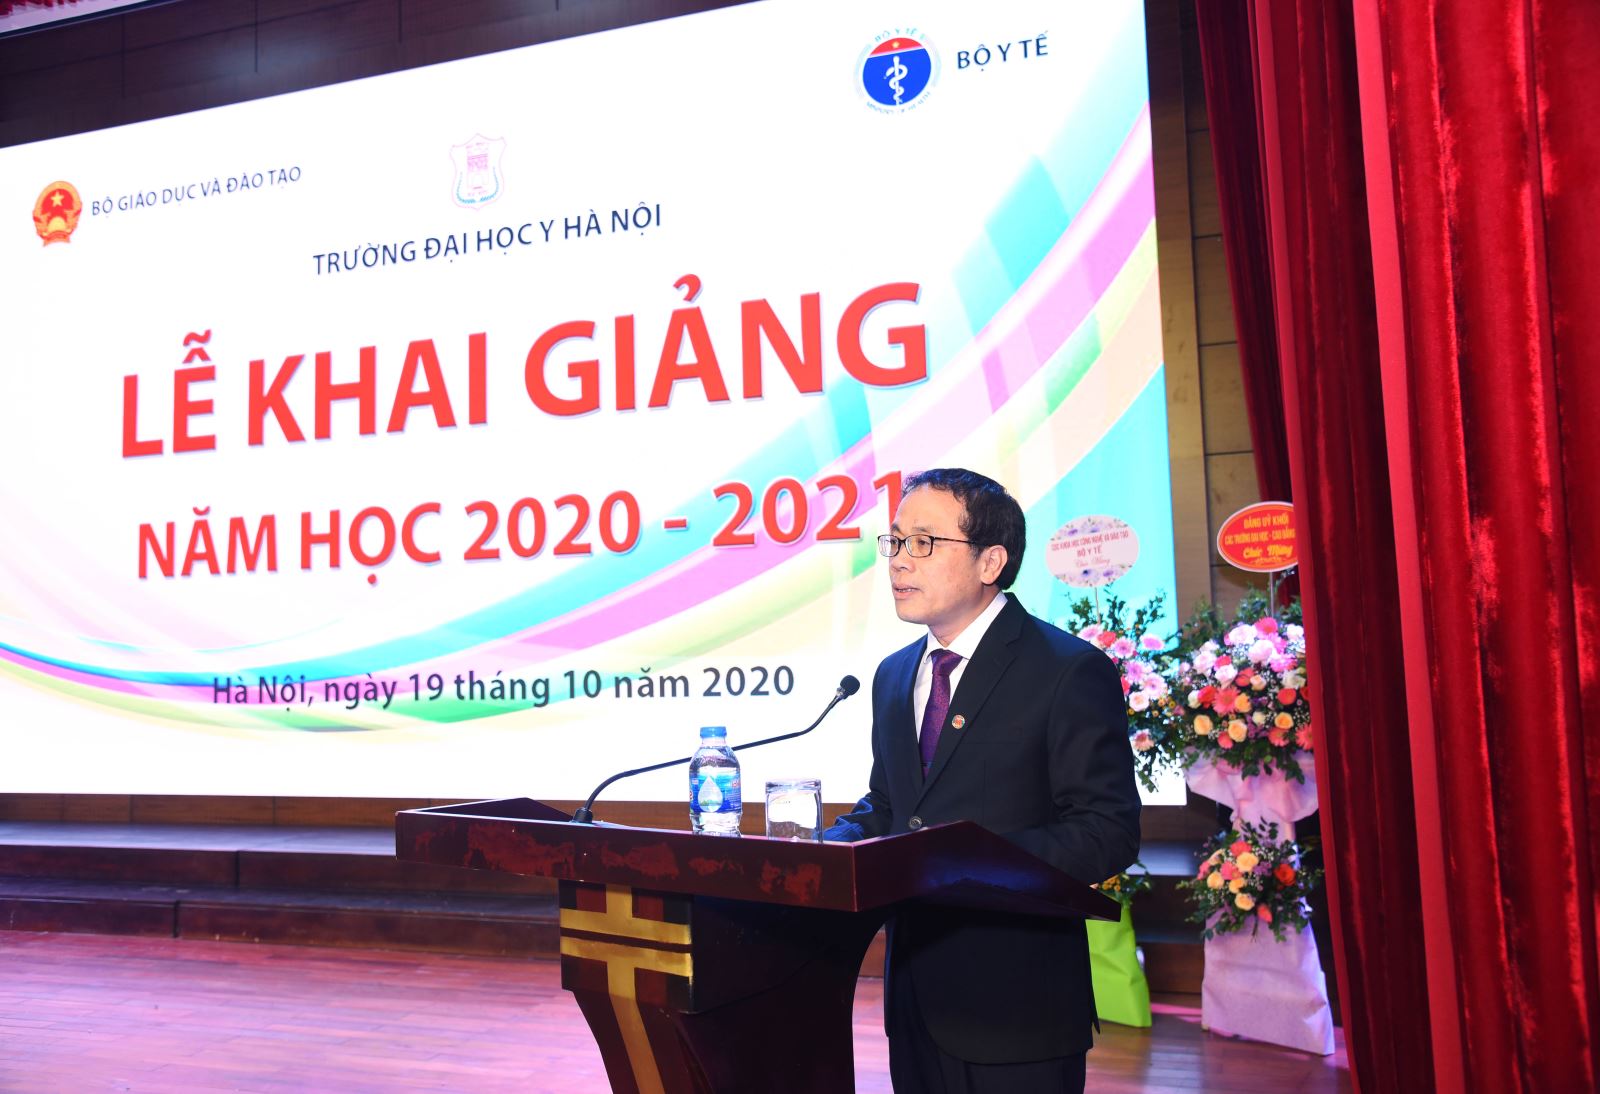 Trường Đại học Y Hà Nội tổ chức Lễ khai giảng năm học 2020 – 2021 